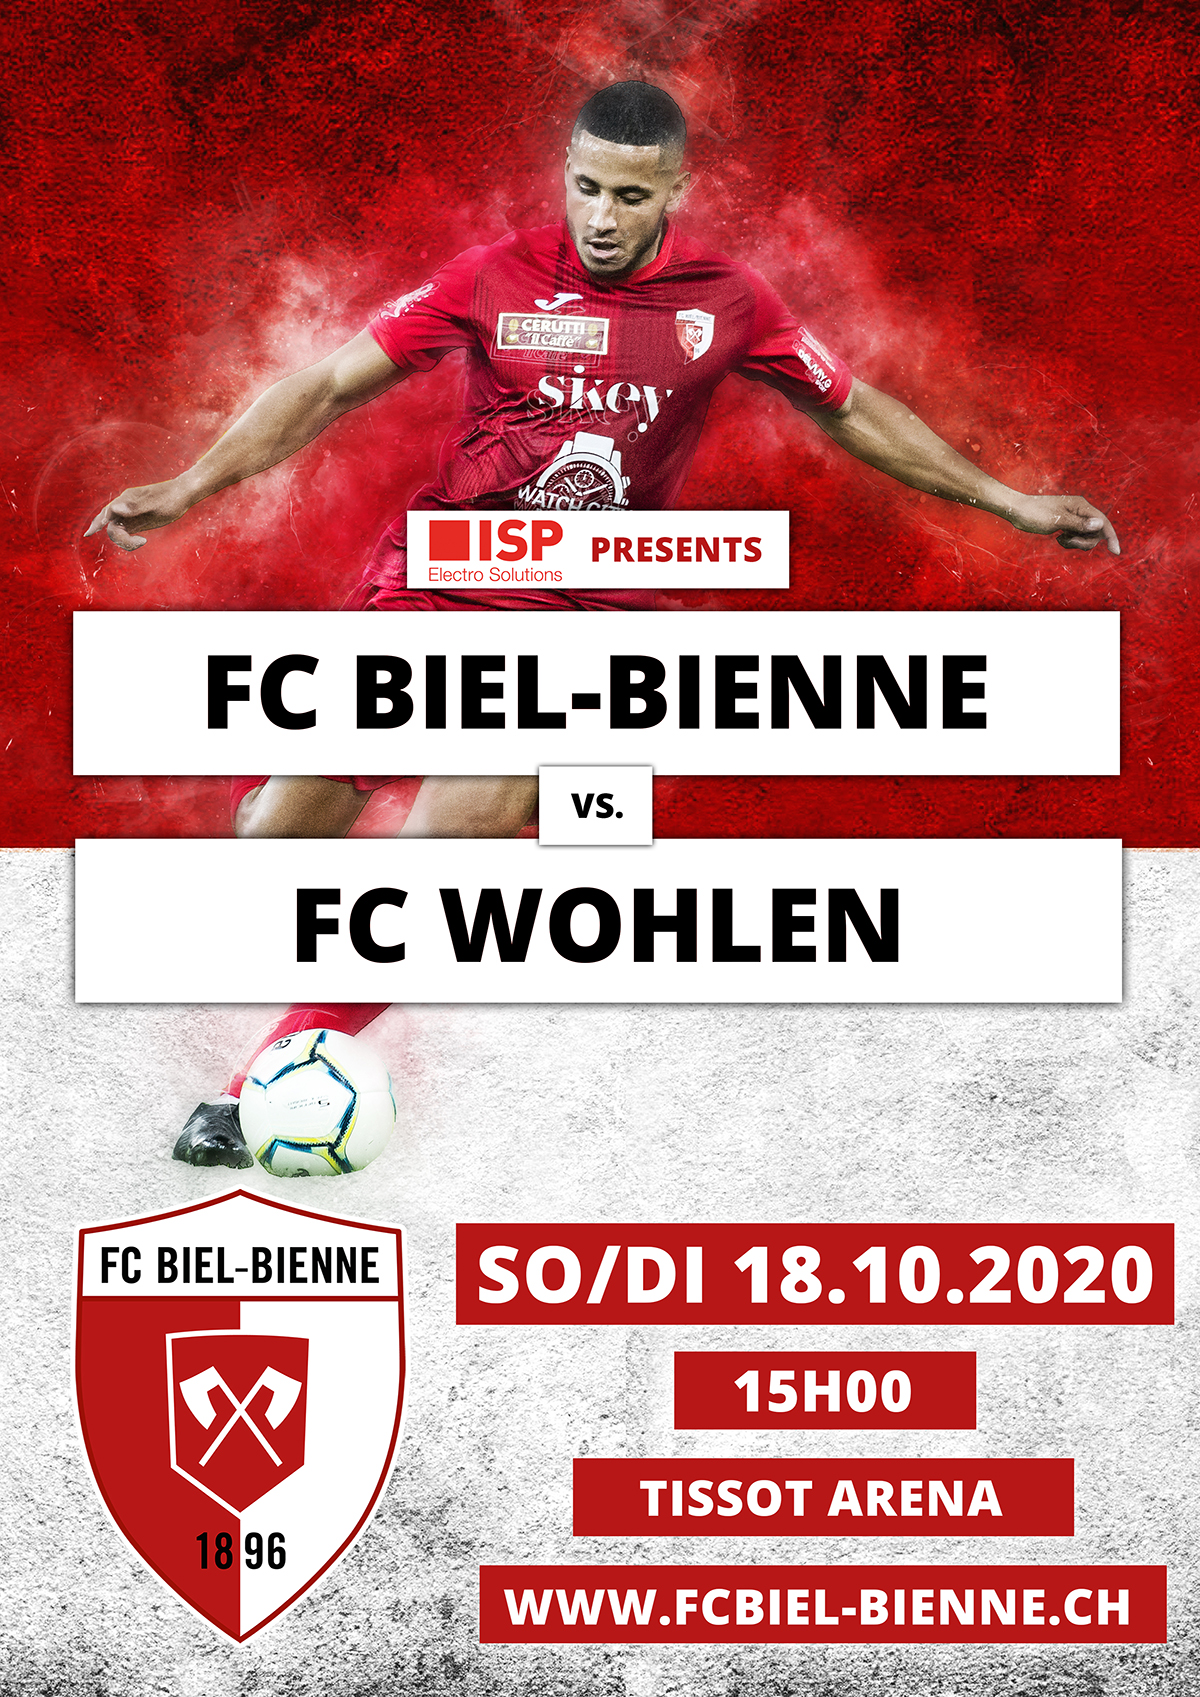 FC Biel-Bienne vs. FC Wohlen